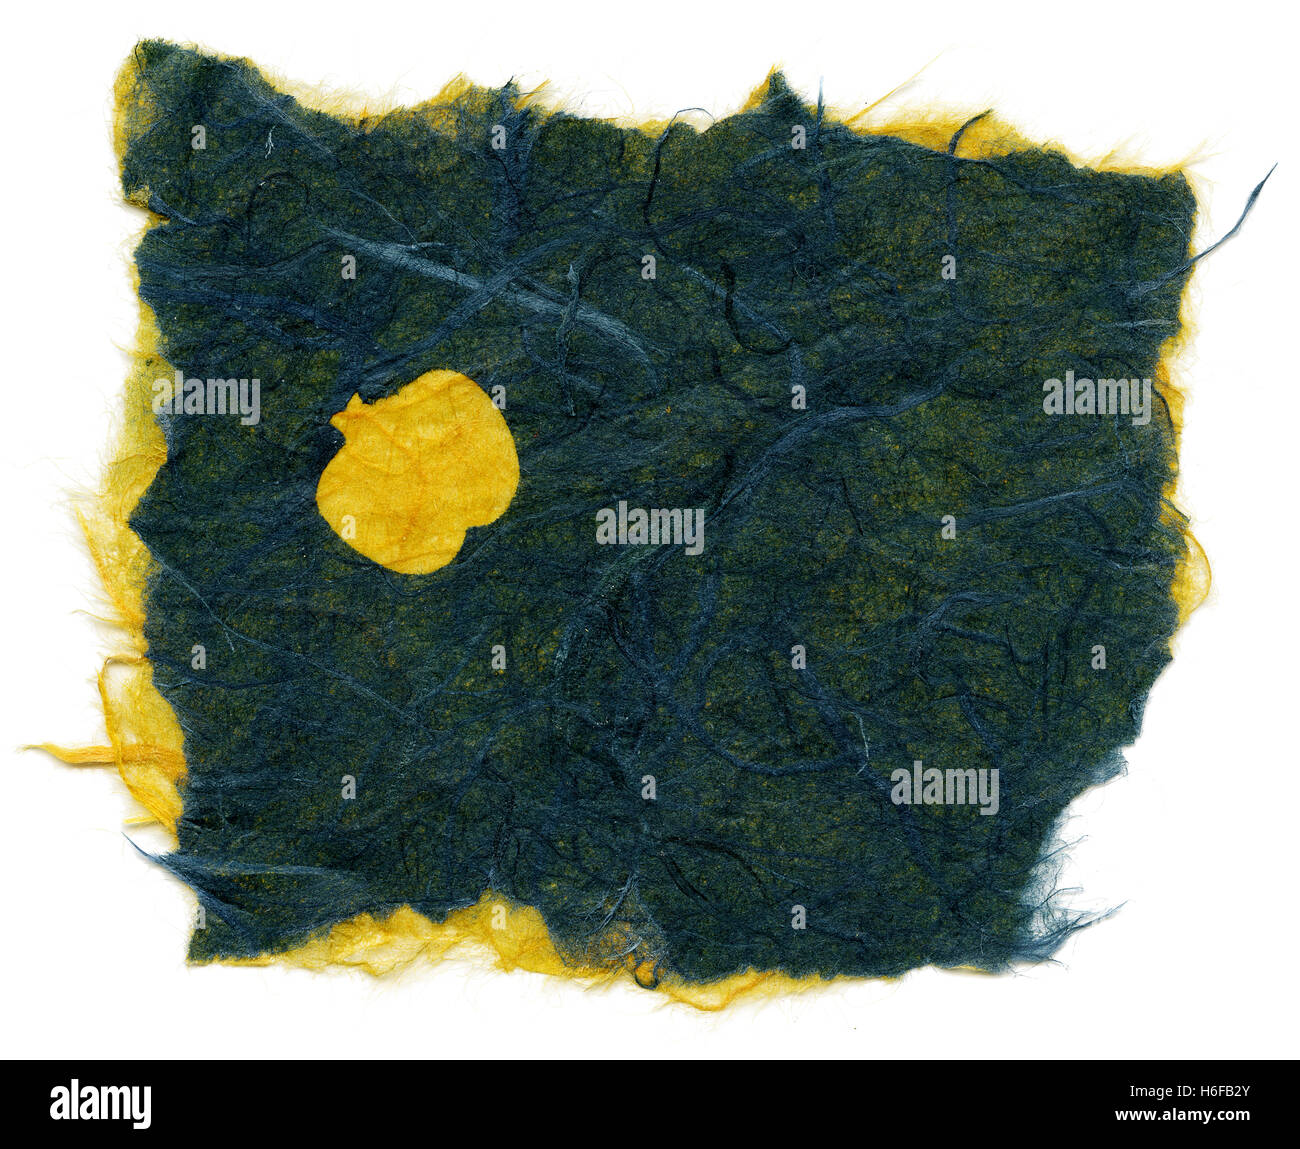 Textur von Grün, blau und gelb Reispapier mit einem Muster von gelben Früchten, vielleicht Äpfel, Verzierung der Oberfläche, mit zerrissenen Edg Stockfoto